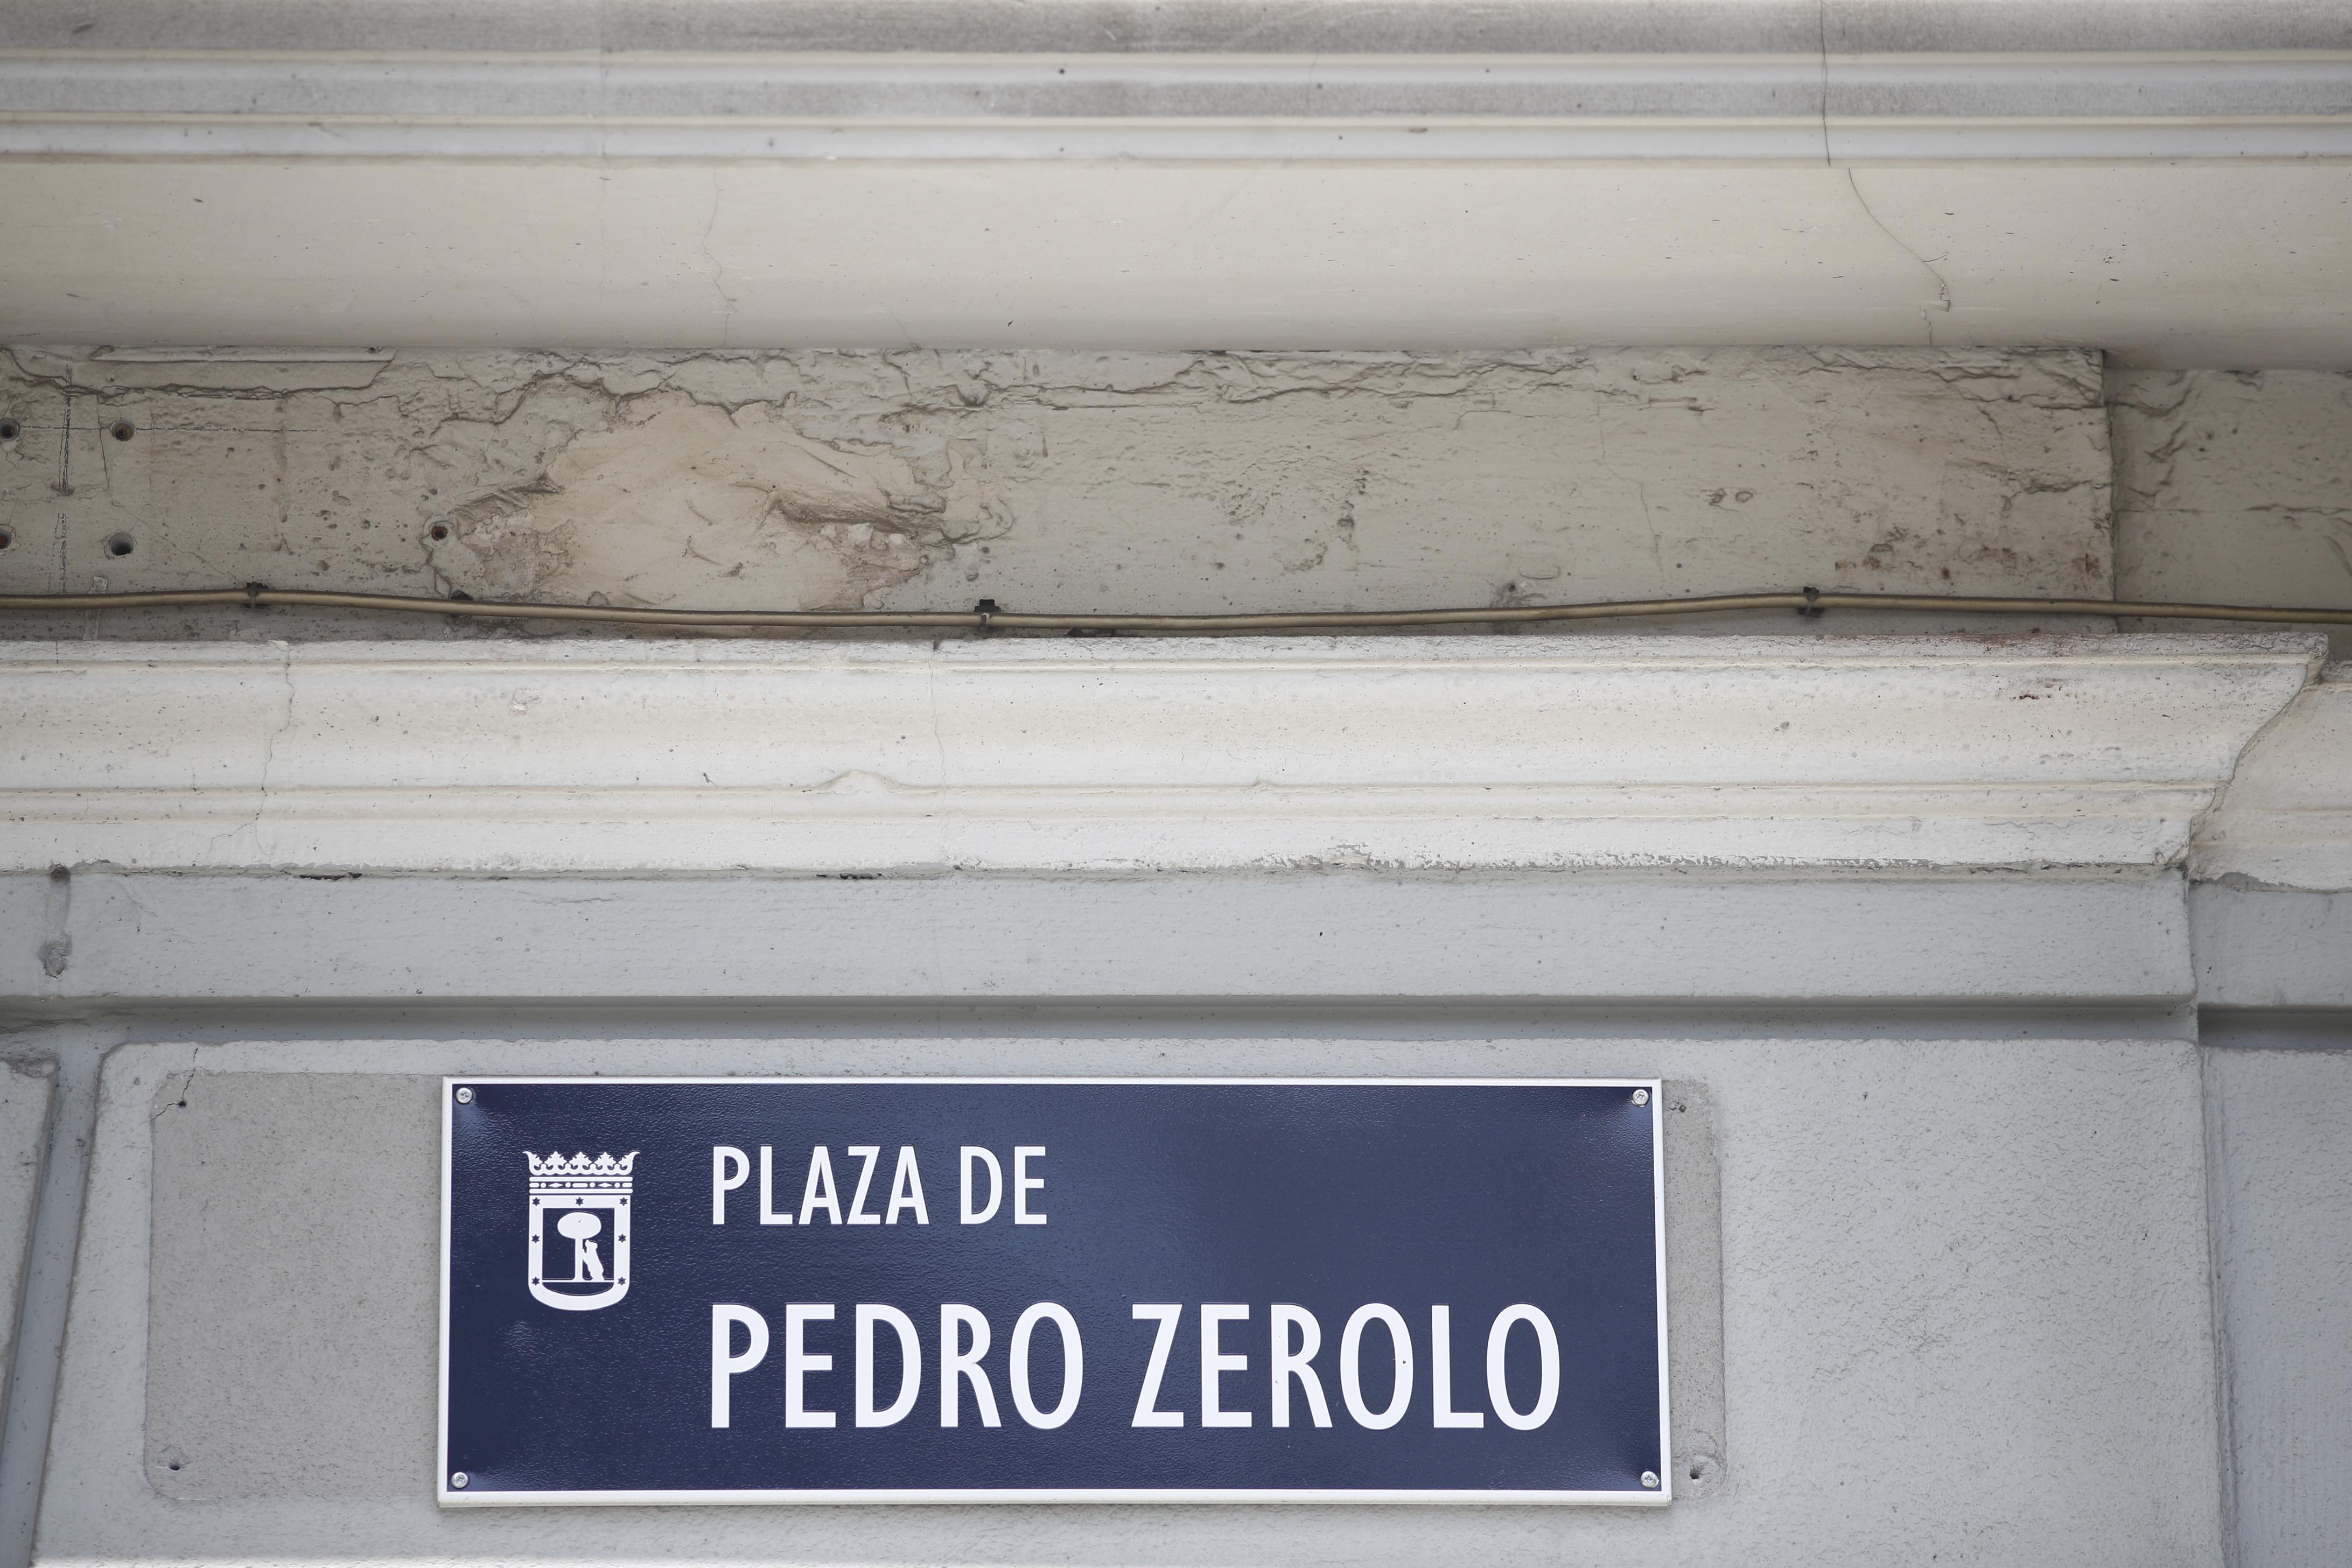 Placa con el nombre de Plaza de Pedro Zerolo en Madrid 